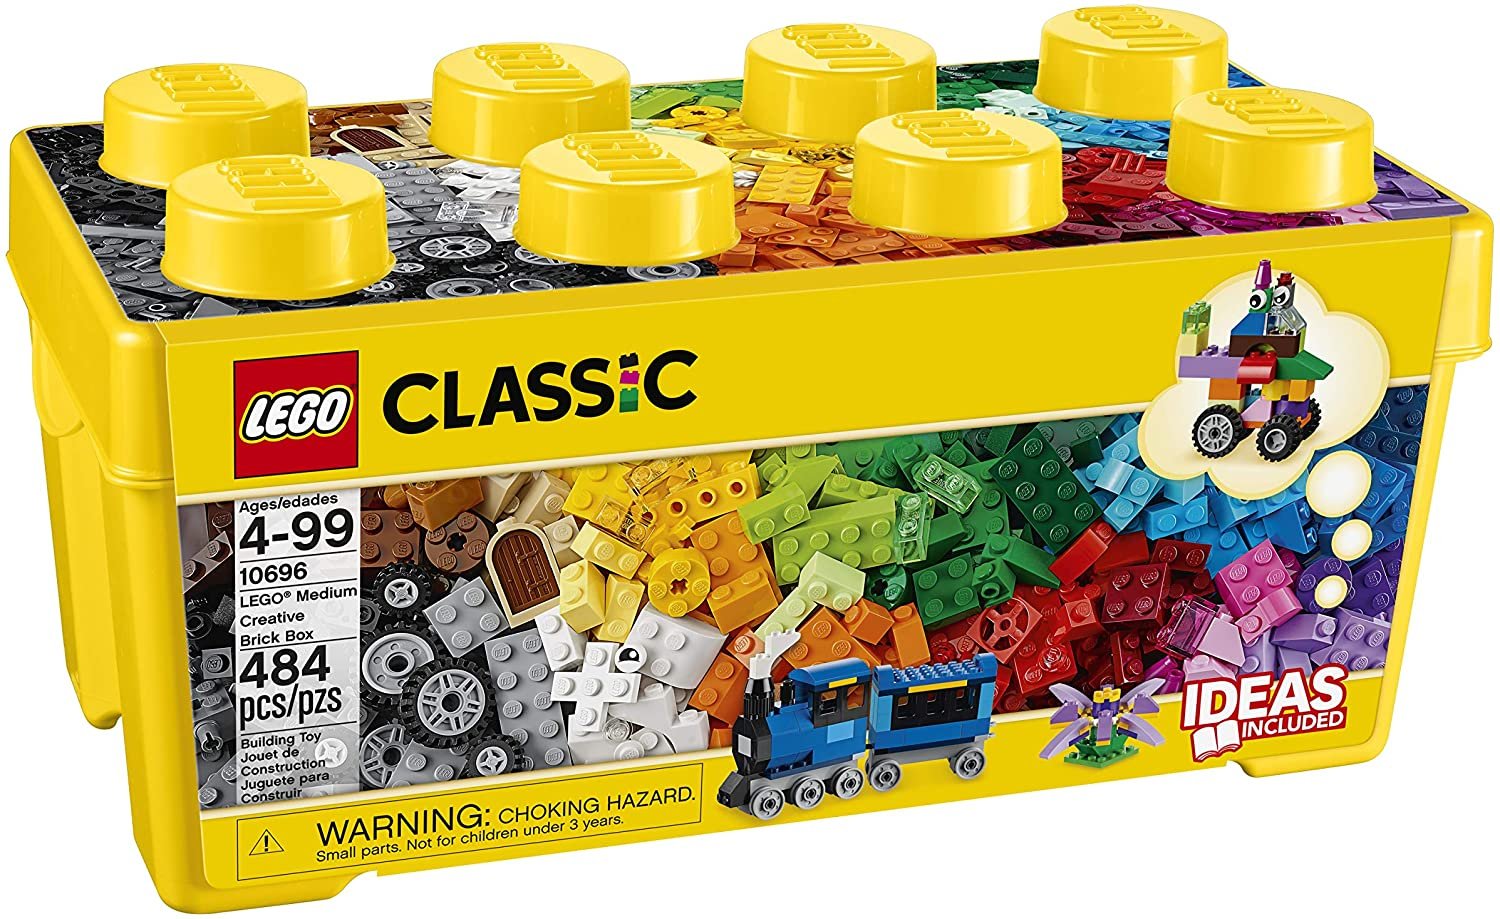 LEGO Classic Medium Creative Brick Box 10696 Building Toys - 484 Pieces